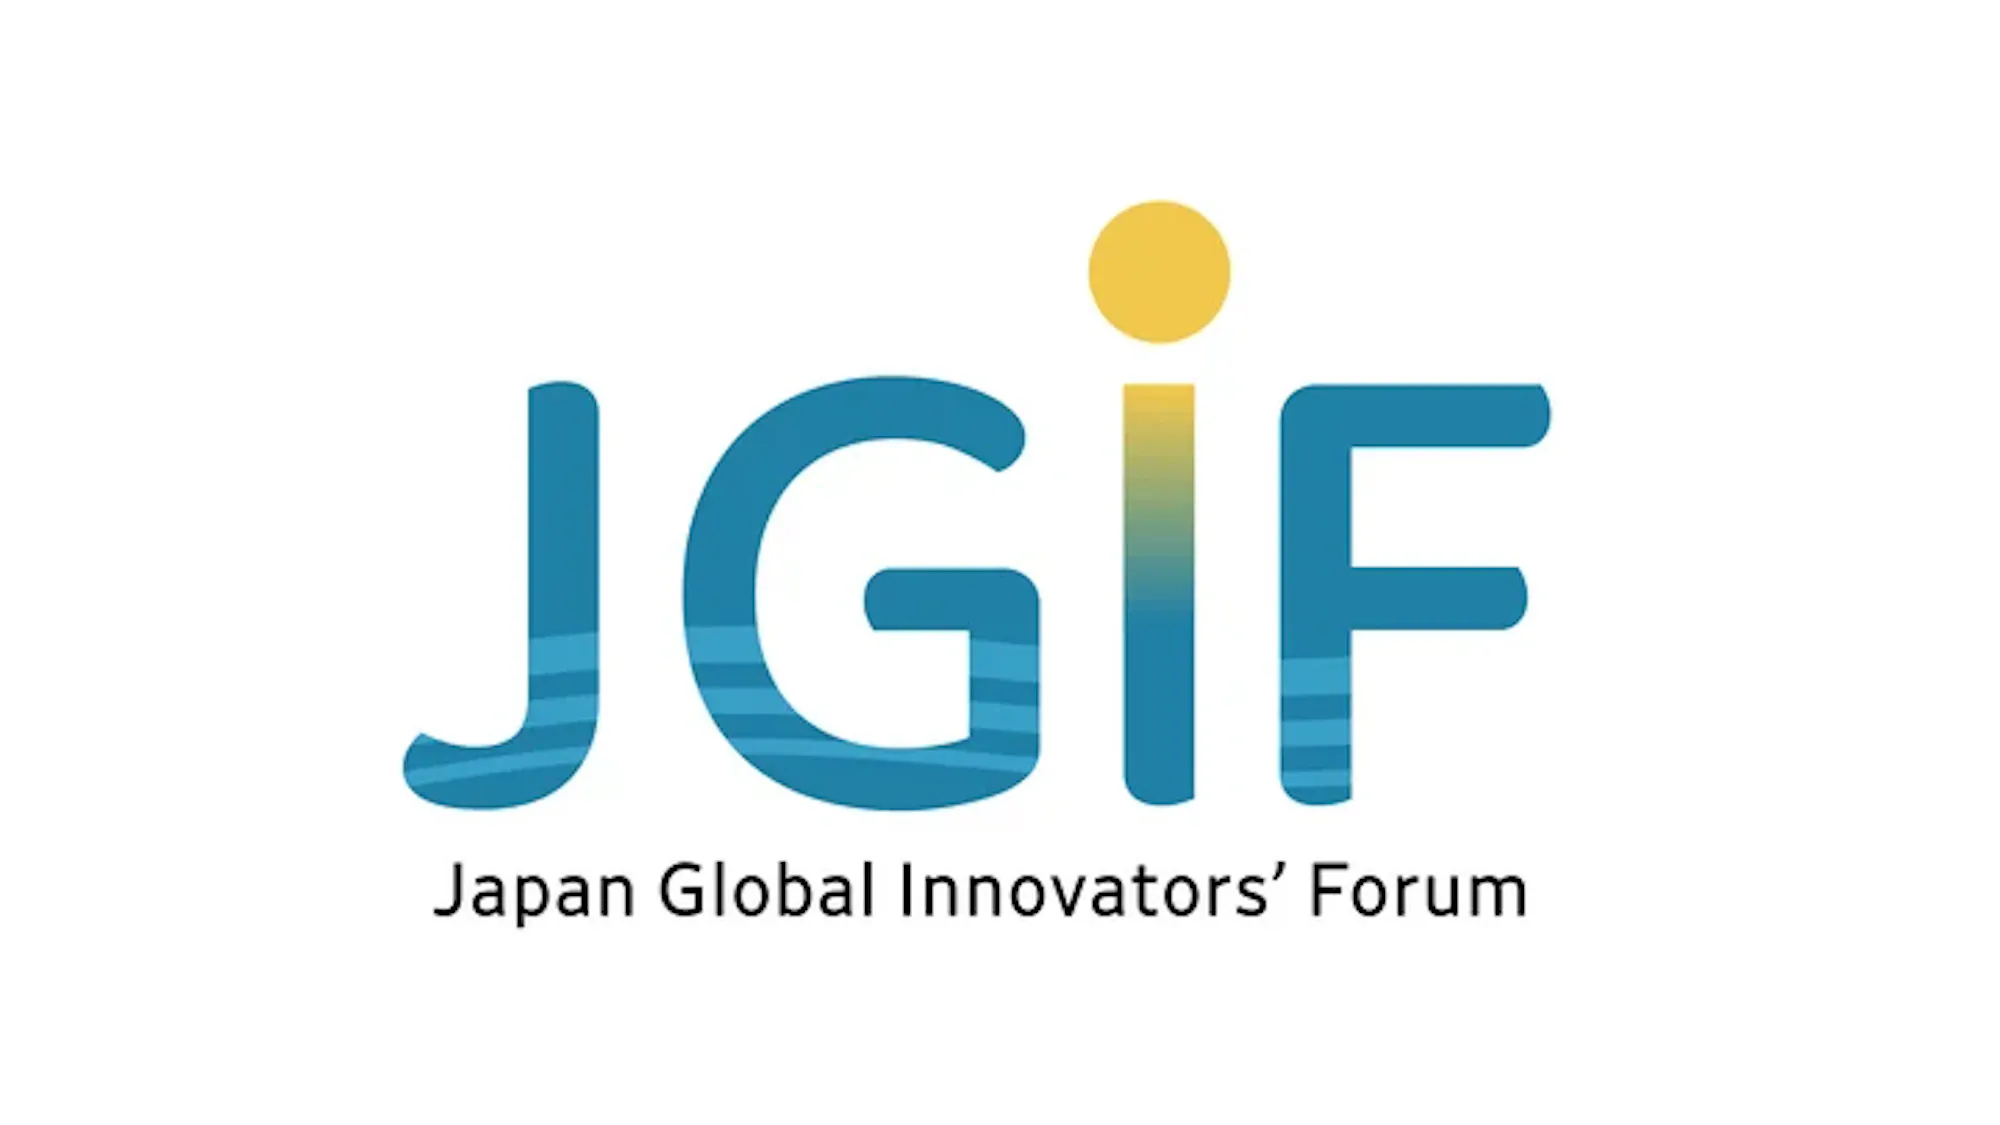 毎日みらい創造ラボ共催の《第1回 Japan Global Innovators’ Forum (JGIF)》に登壇いたします